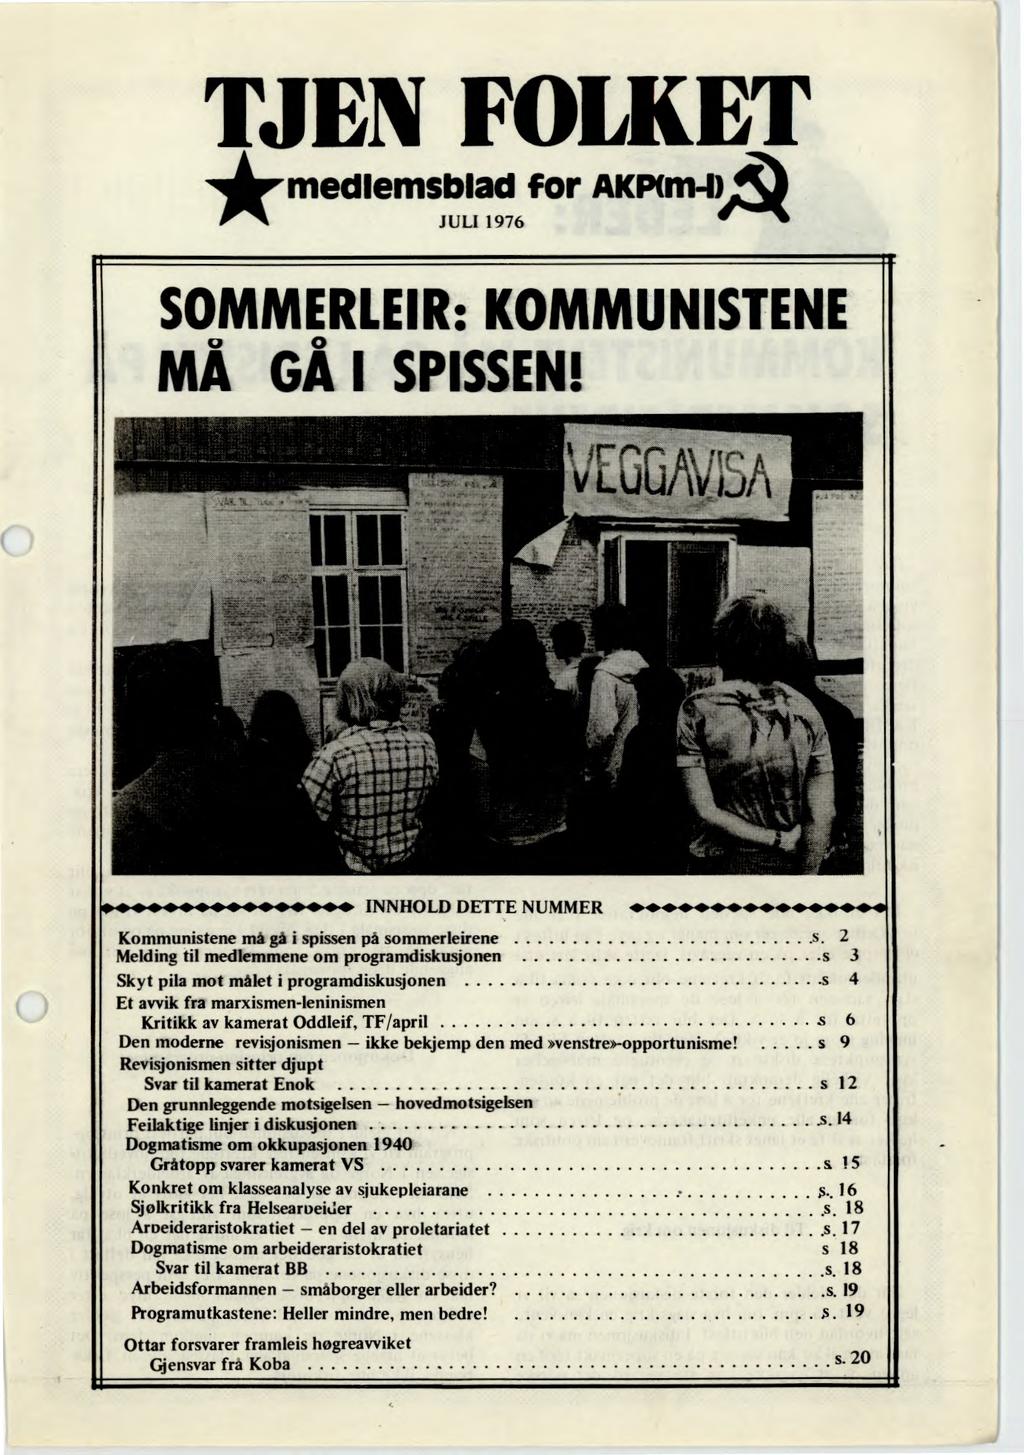 TJEN FOLKET *medlemsblad for AKP(m-1) JULI 1976 SOMMERLEIR: KOMMUNISTENE MÅ GÅ I SPISSEN!